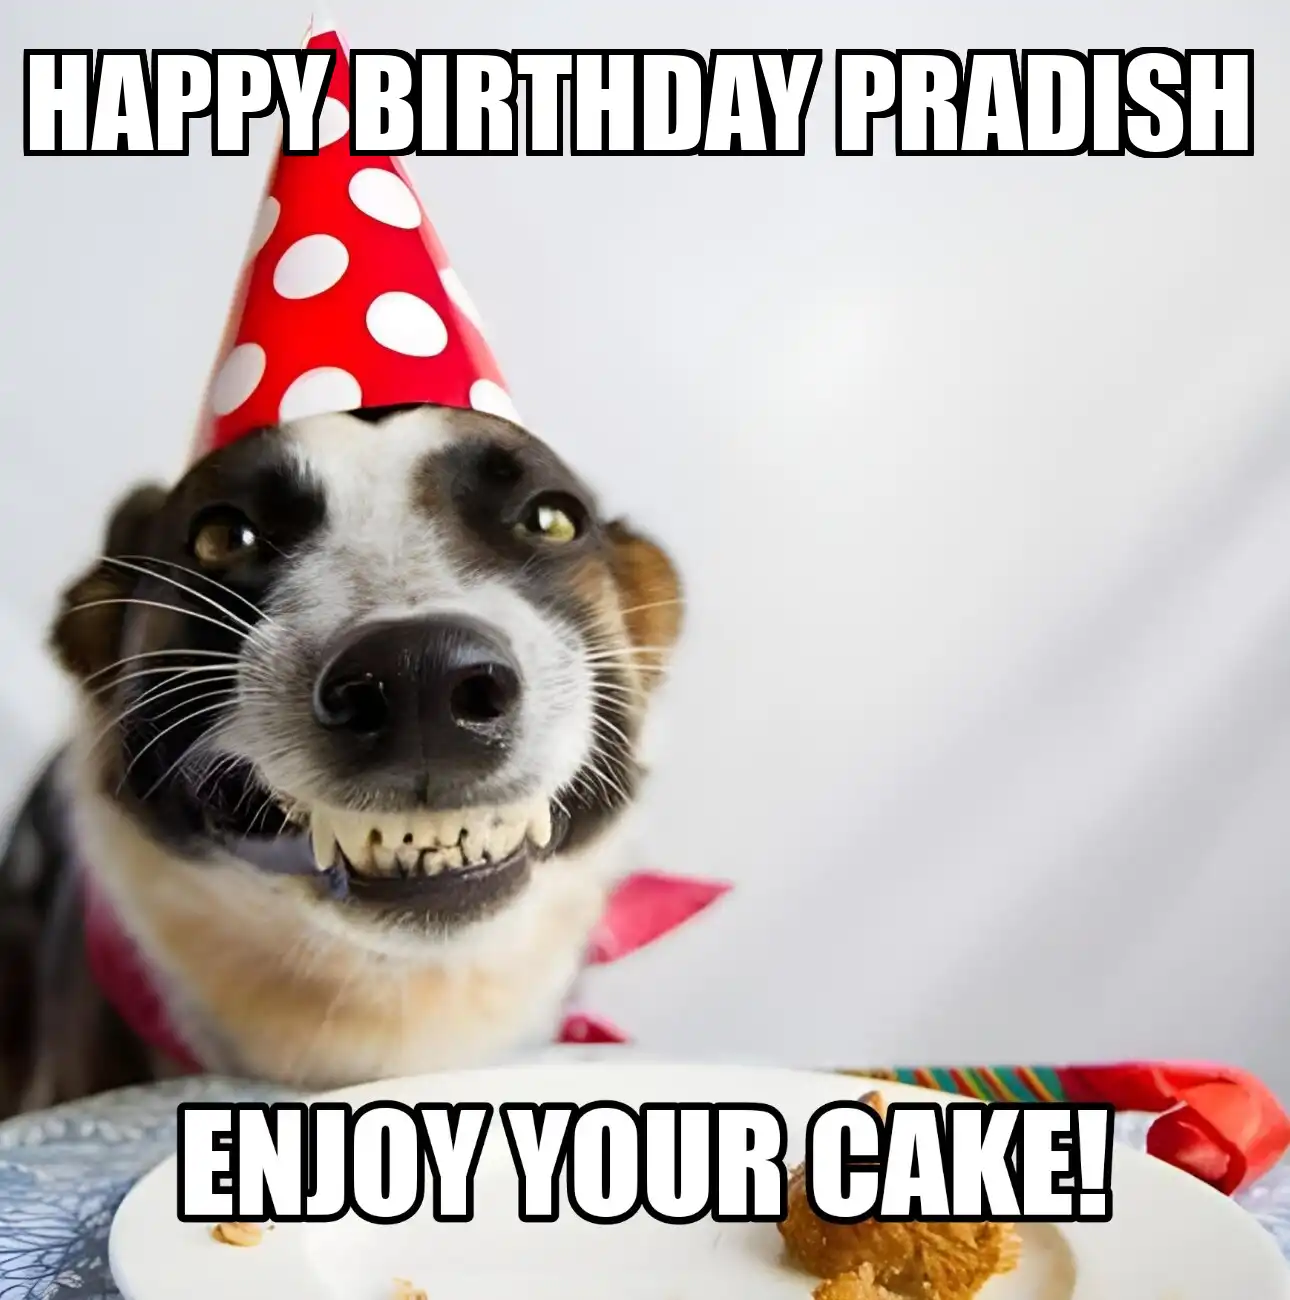 Happy Birthday Pradish Enjoy Your Cake Dog Meme